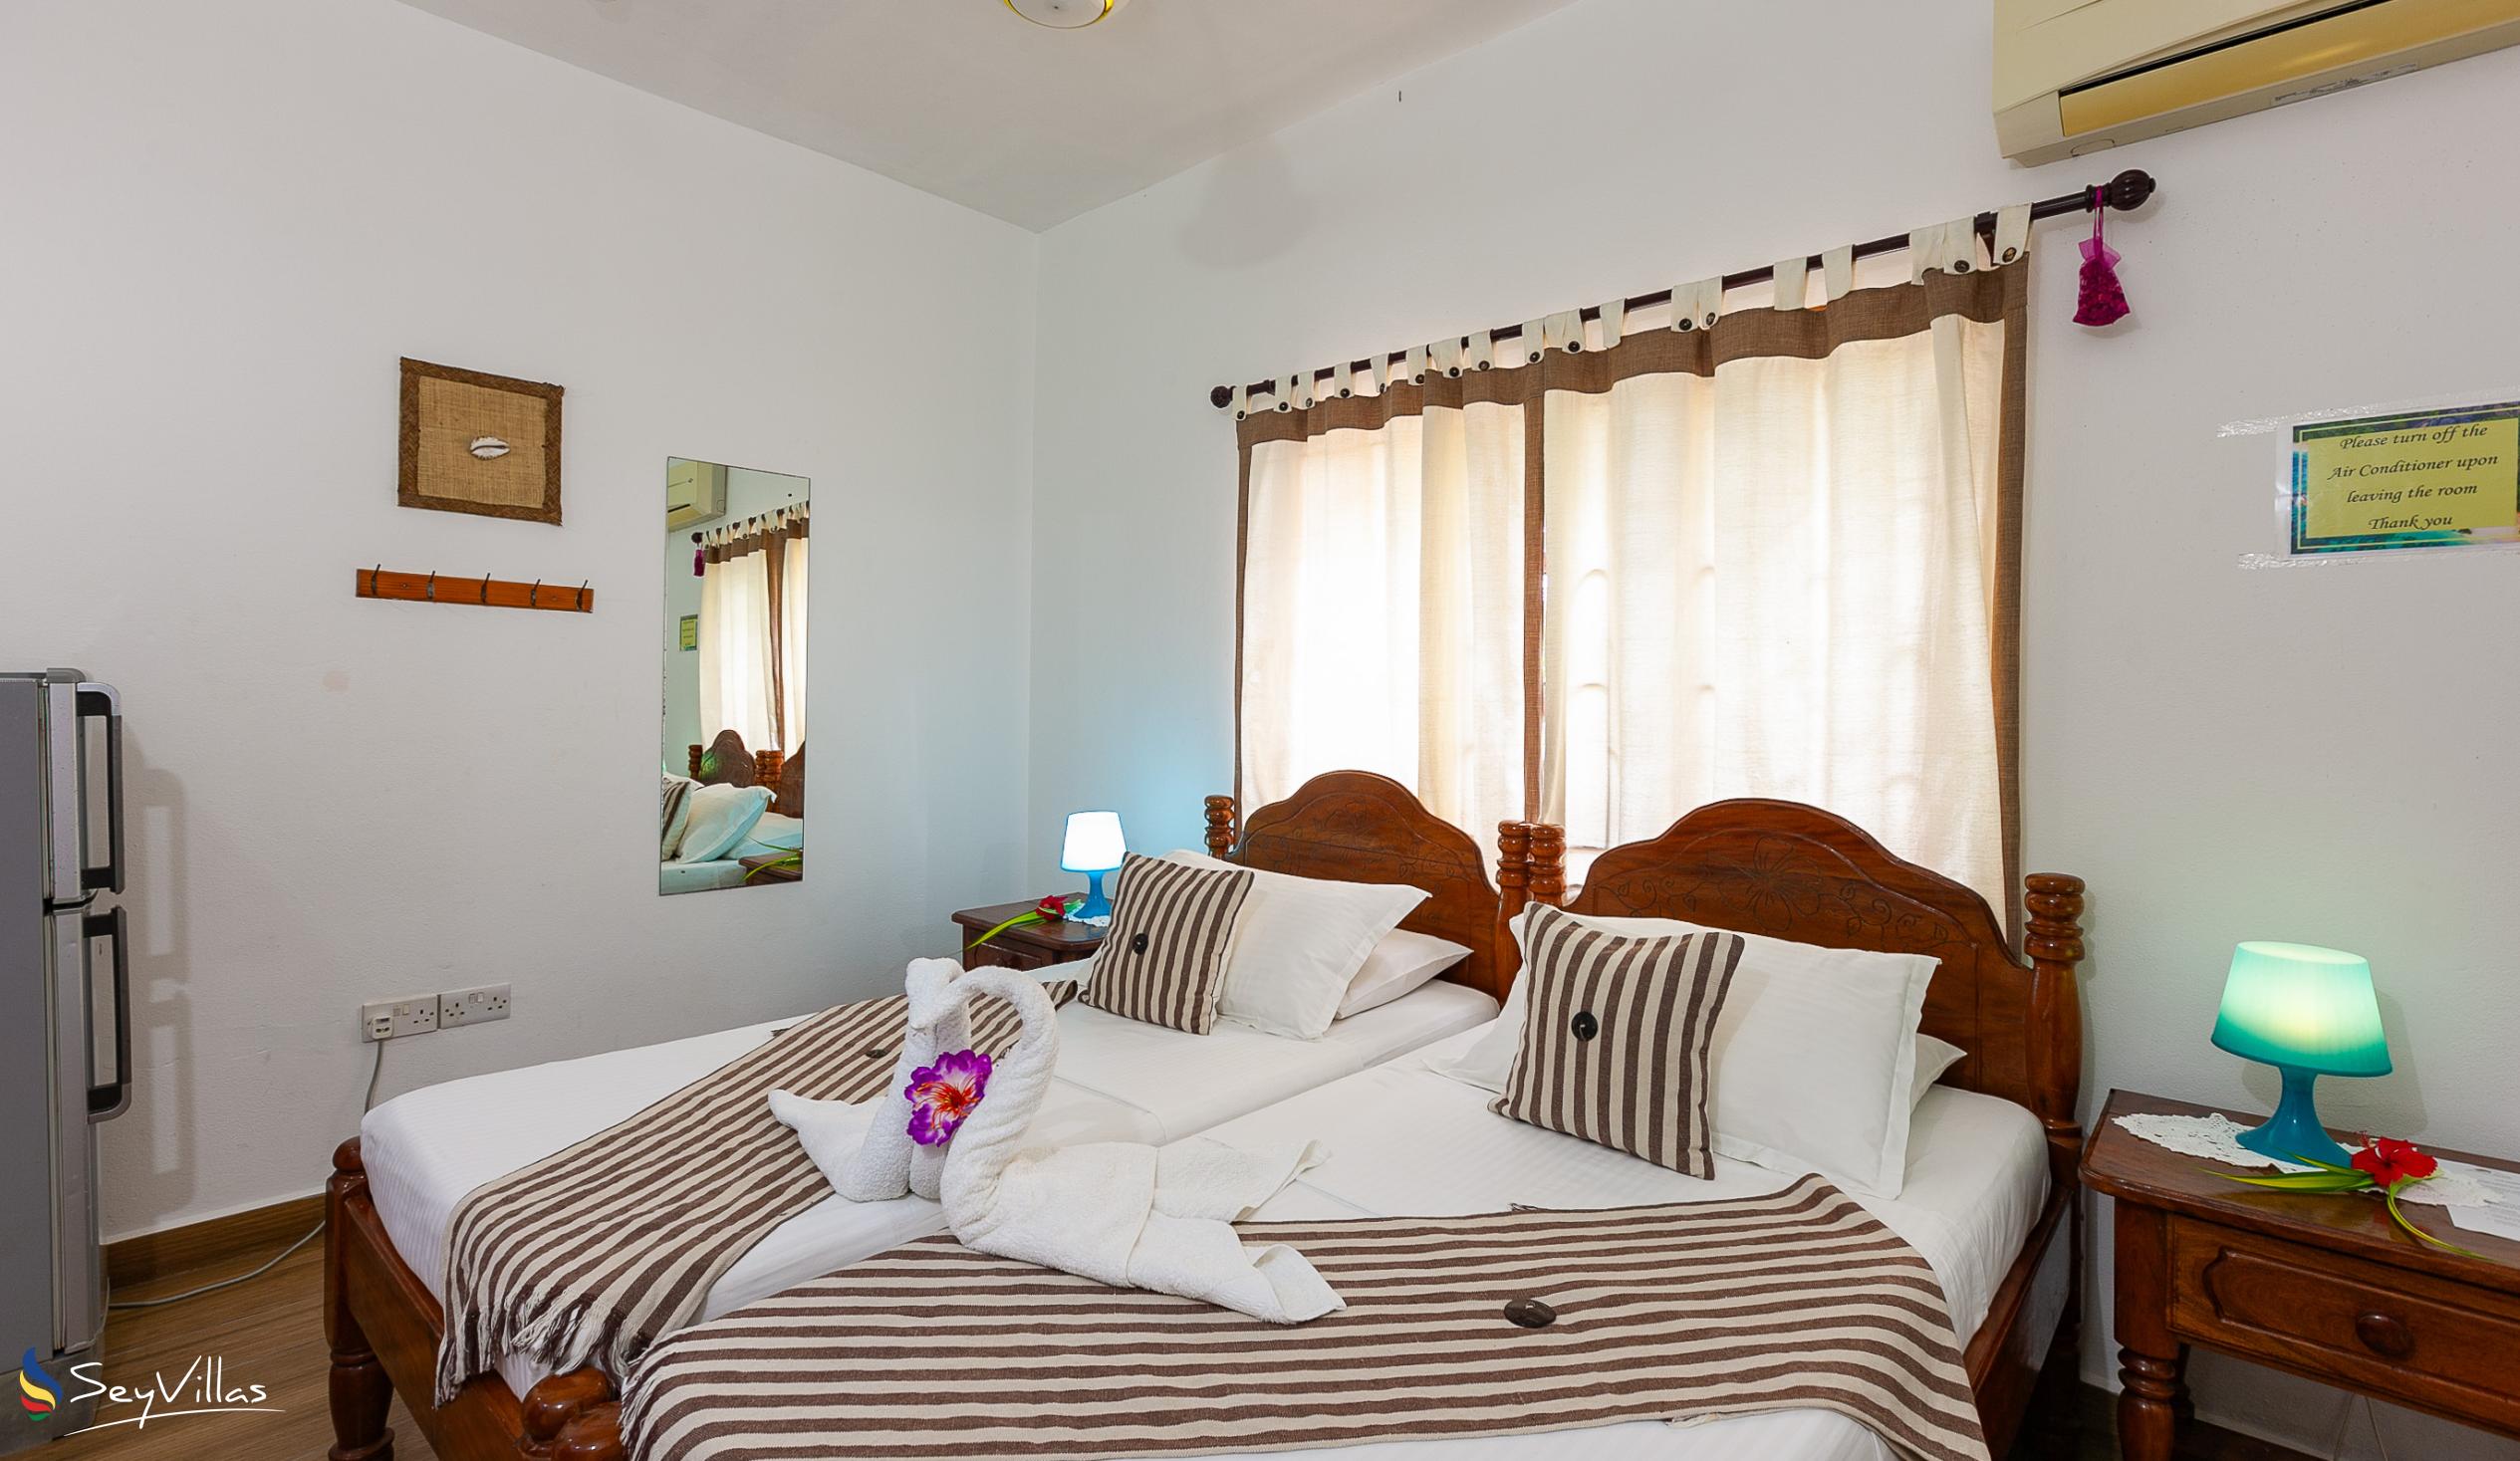 Foto 81: Tannette's Villa - Chambre avec lits jumeaux - La Digue (Seychelles)